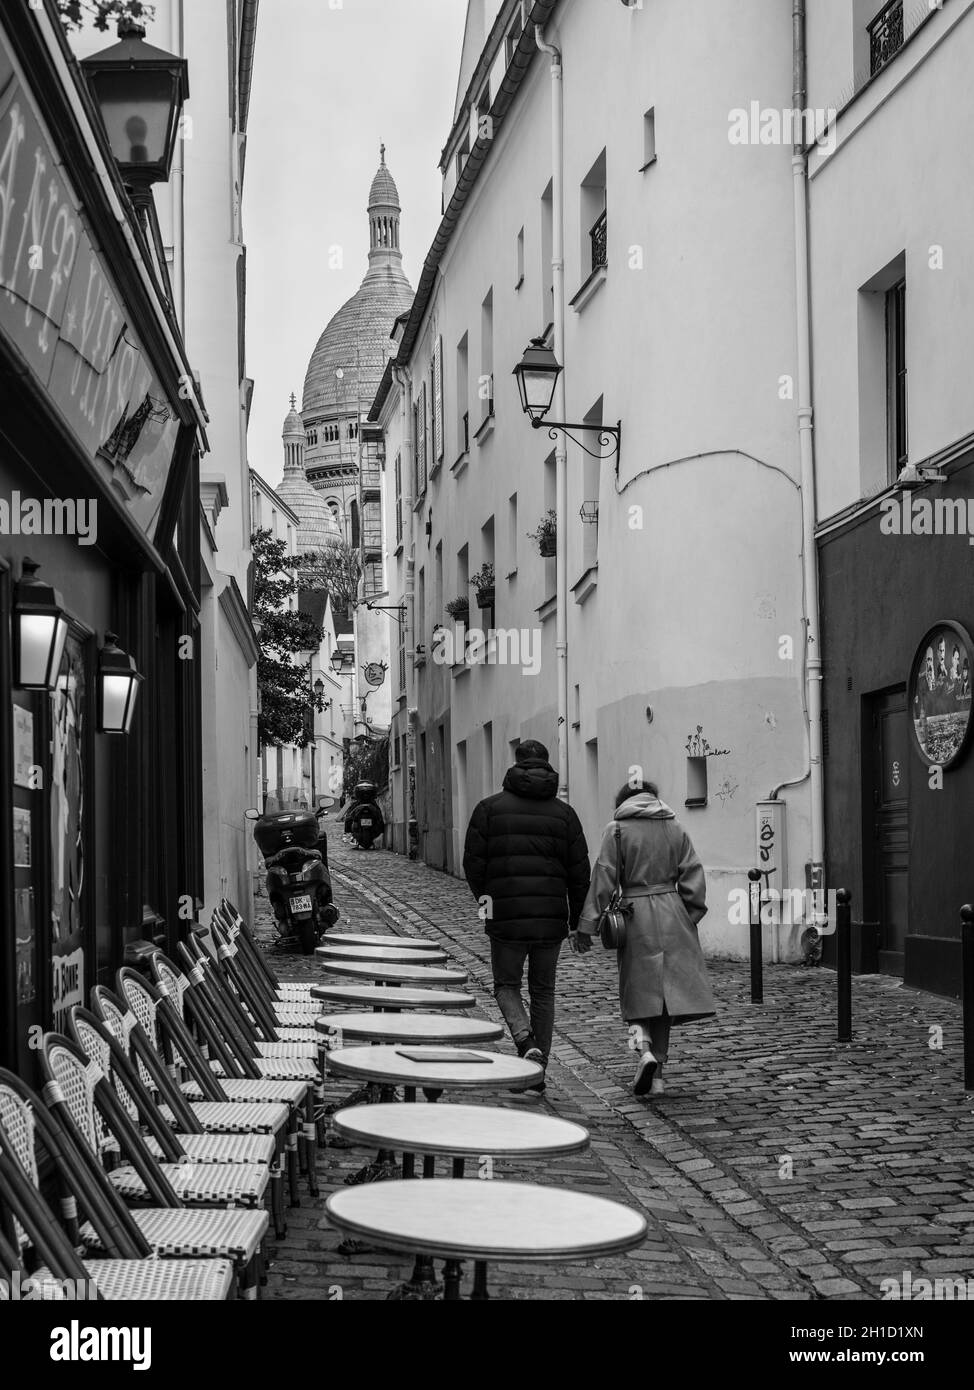 Paris, France - 23 décembre 2018 : vue sur une rue confortable du quartier de Montmartre à Paris, France. Architecture et monuments de Paris. PH noir et blanc Banque D'Images